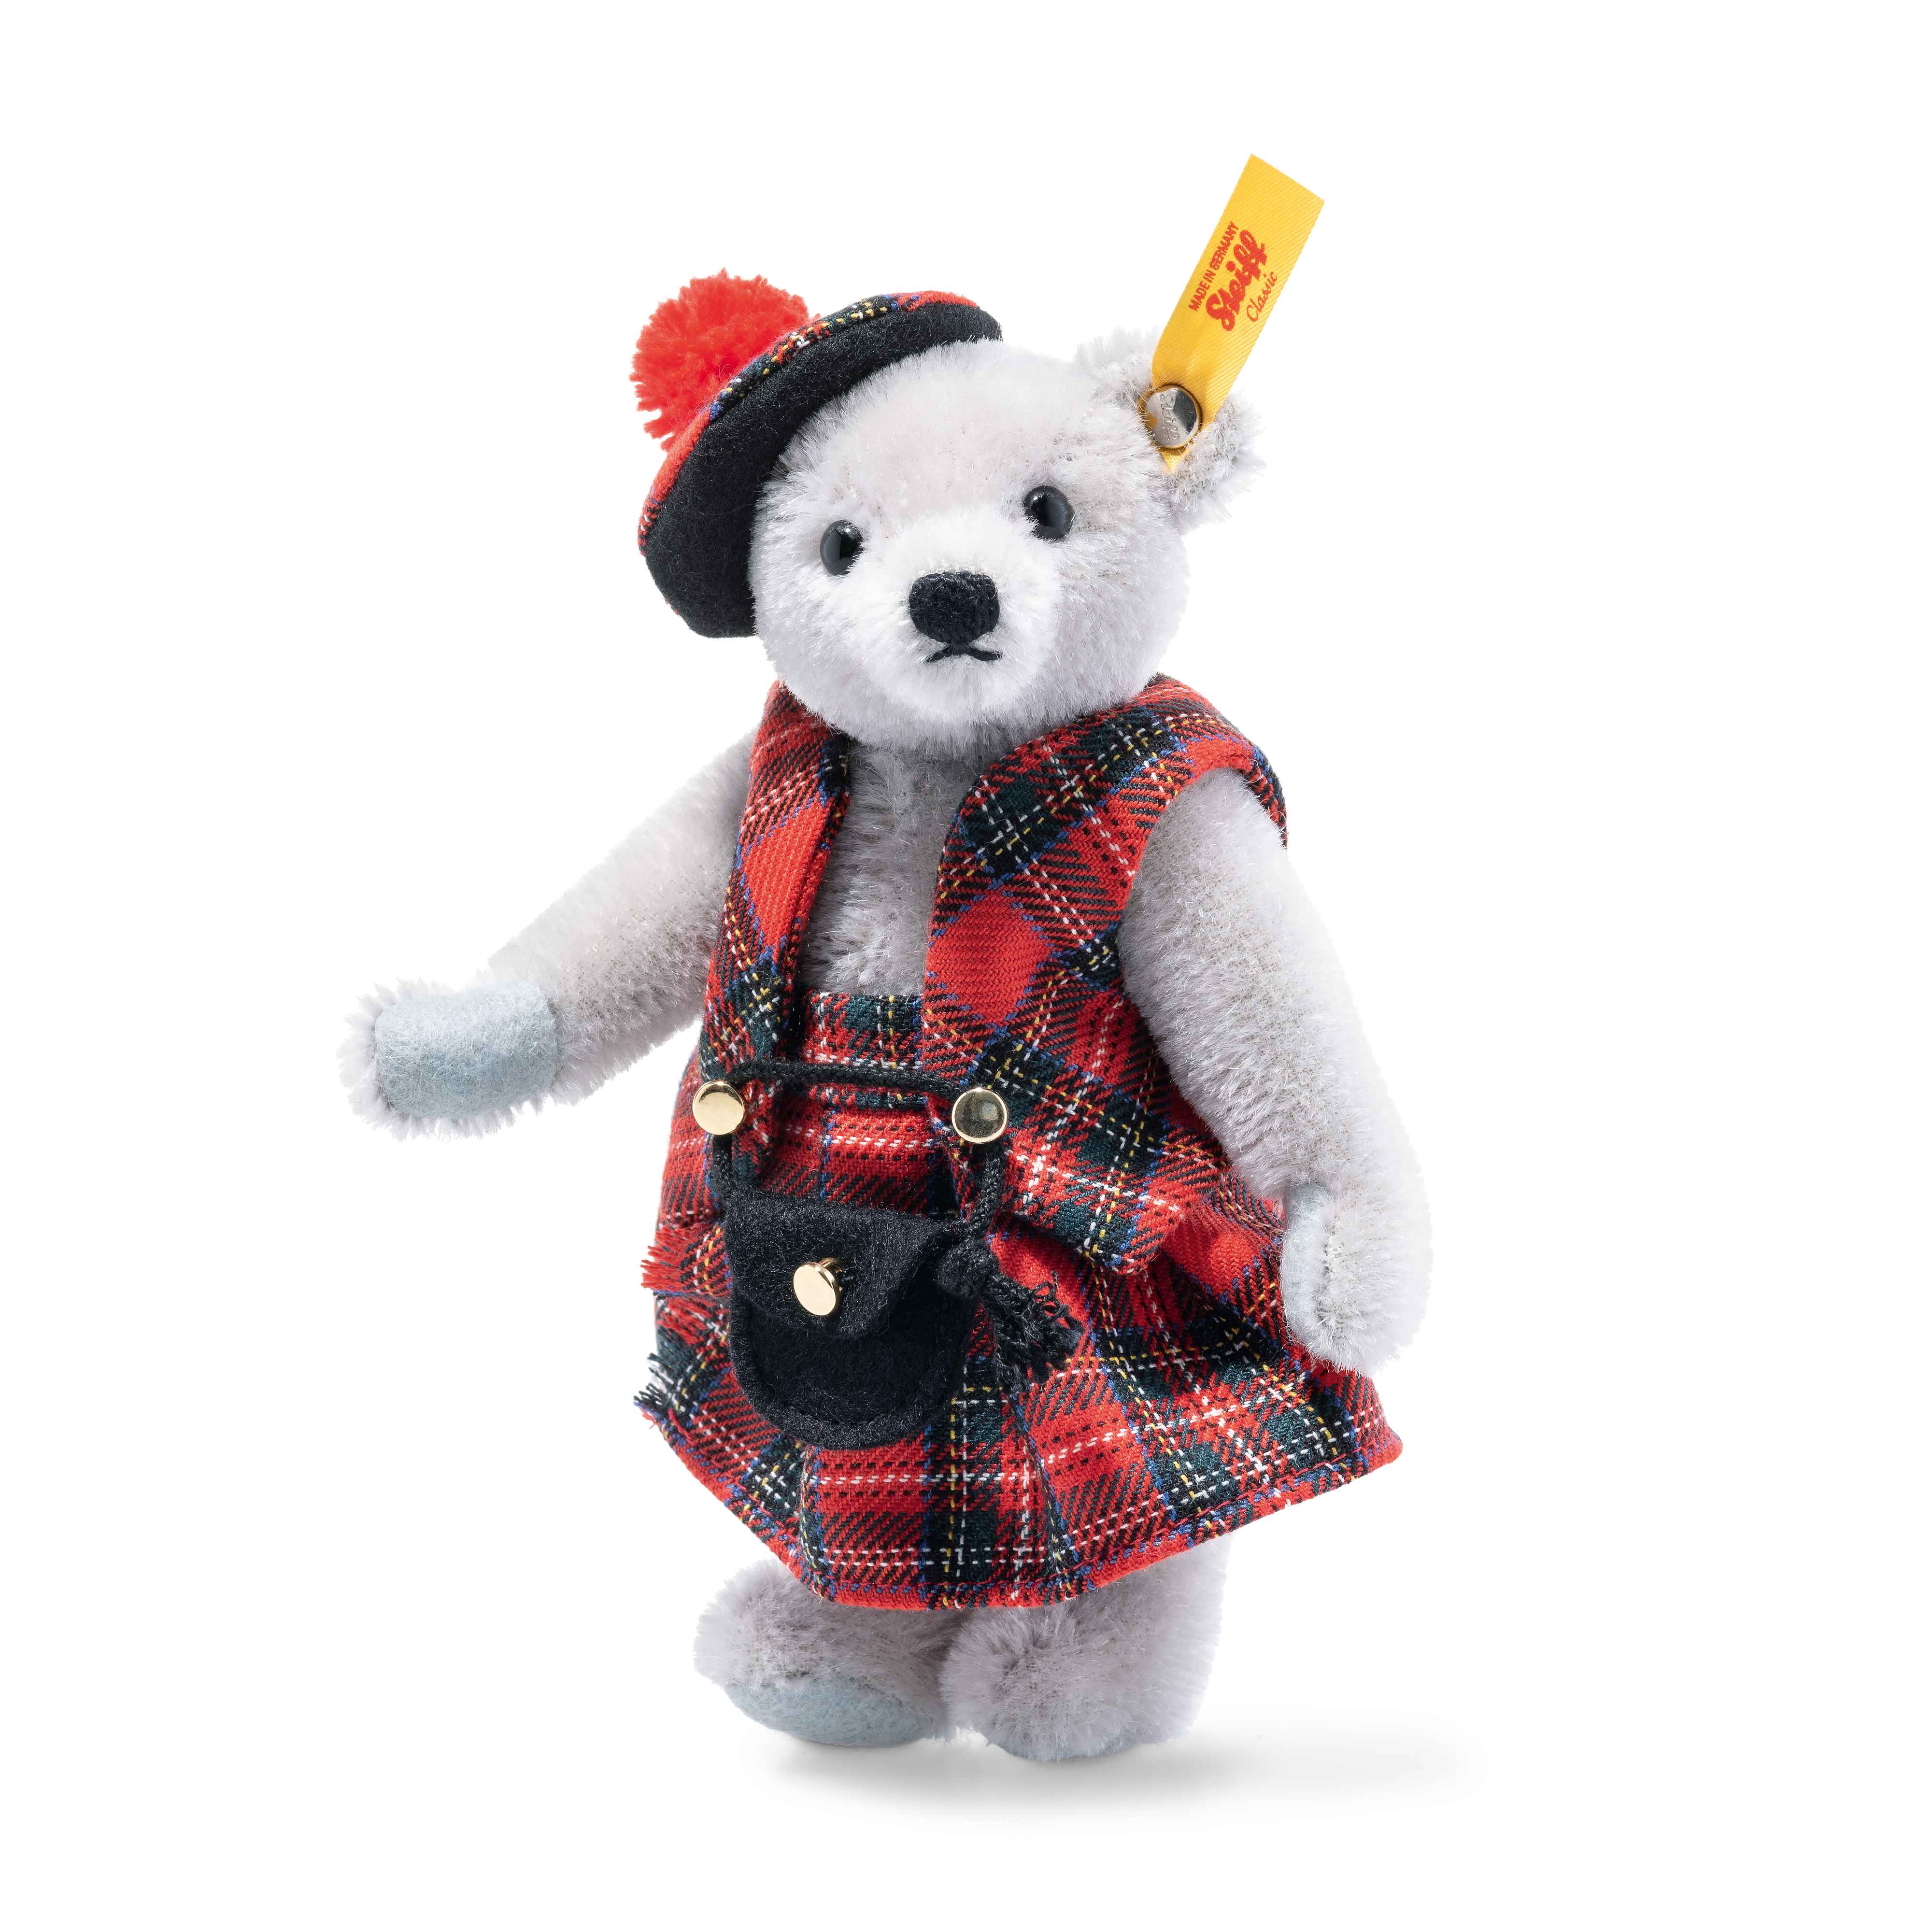 Steiff wճ}: Great Escapes Edinburgh Teddy Bear in gift box